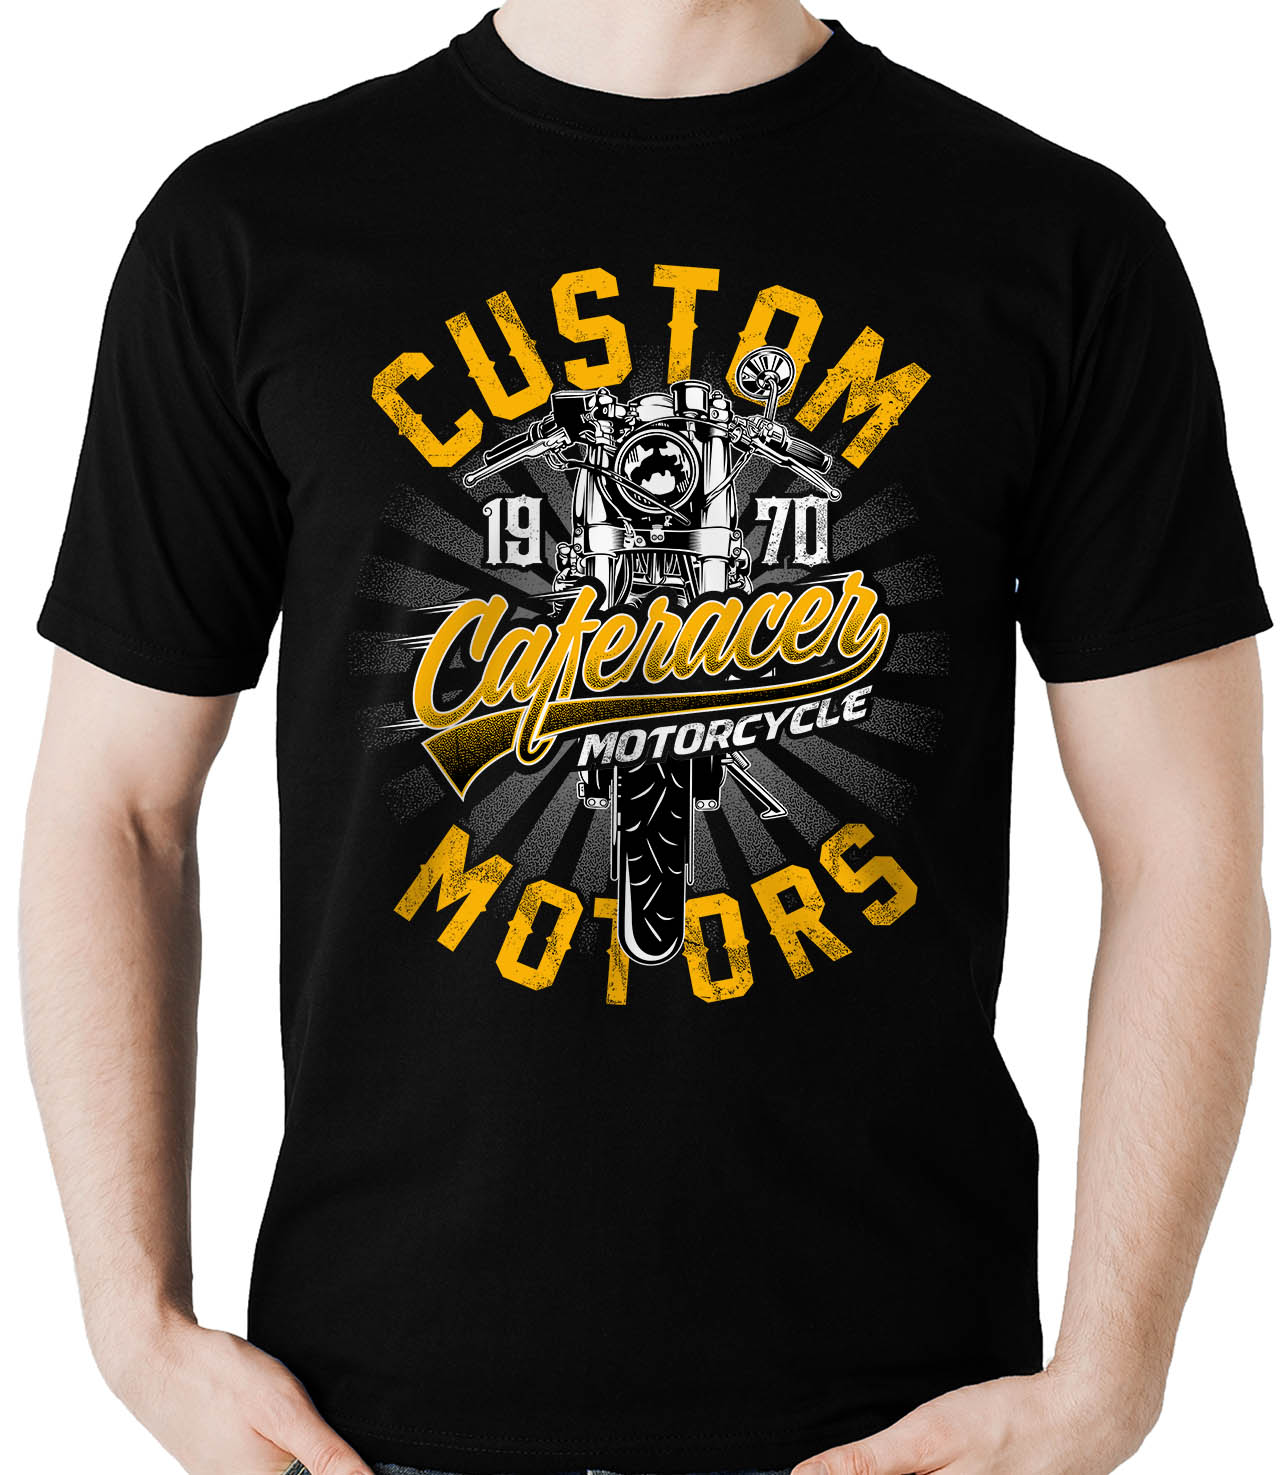 Camiseta Caferacer custom - Motociclista Moto motoqueiro  - Dragon Store